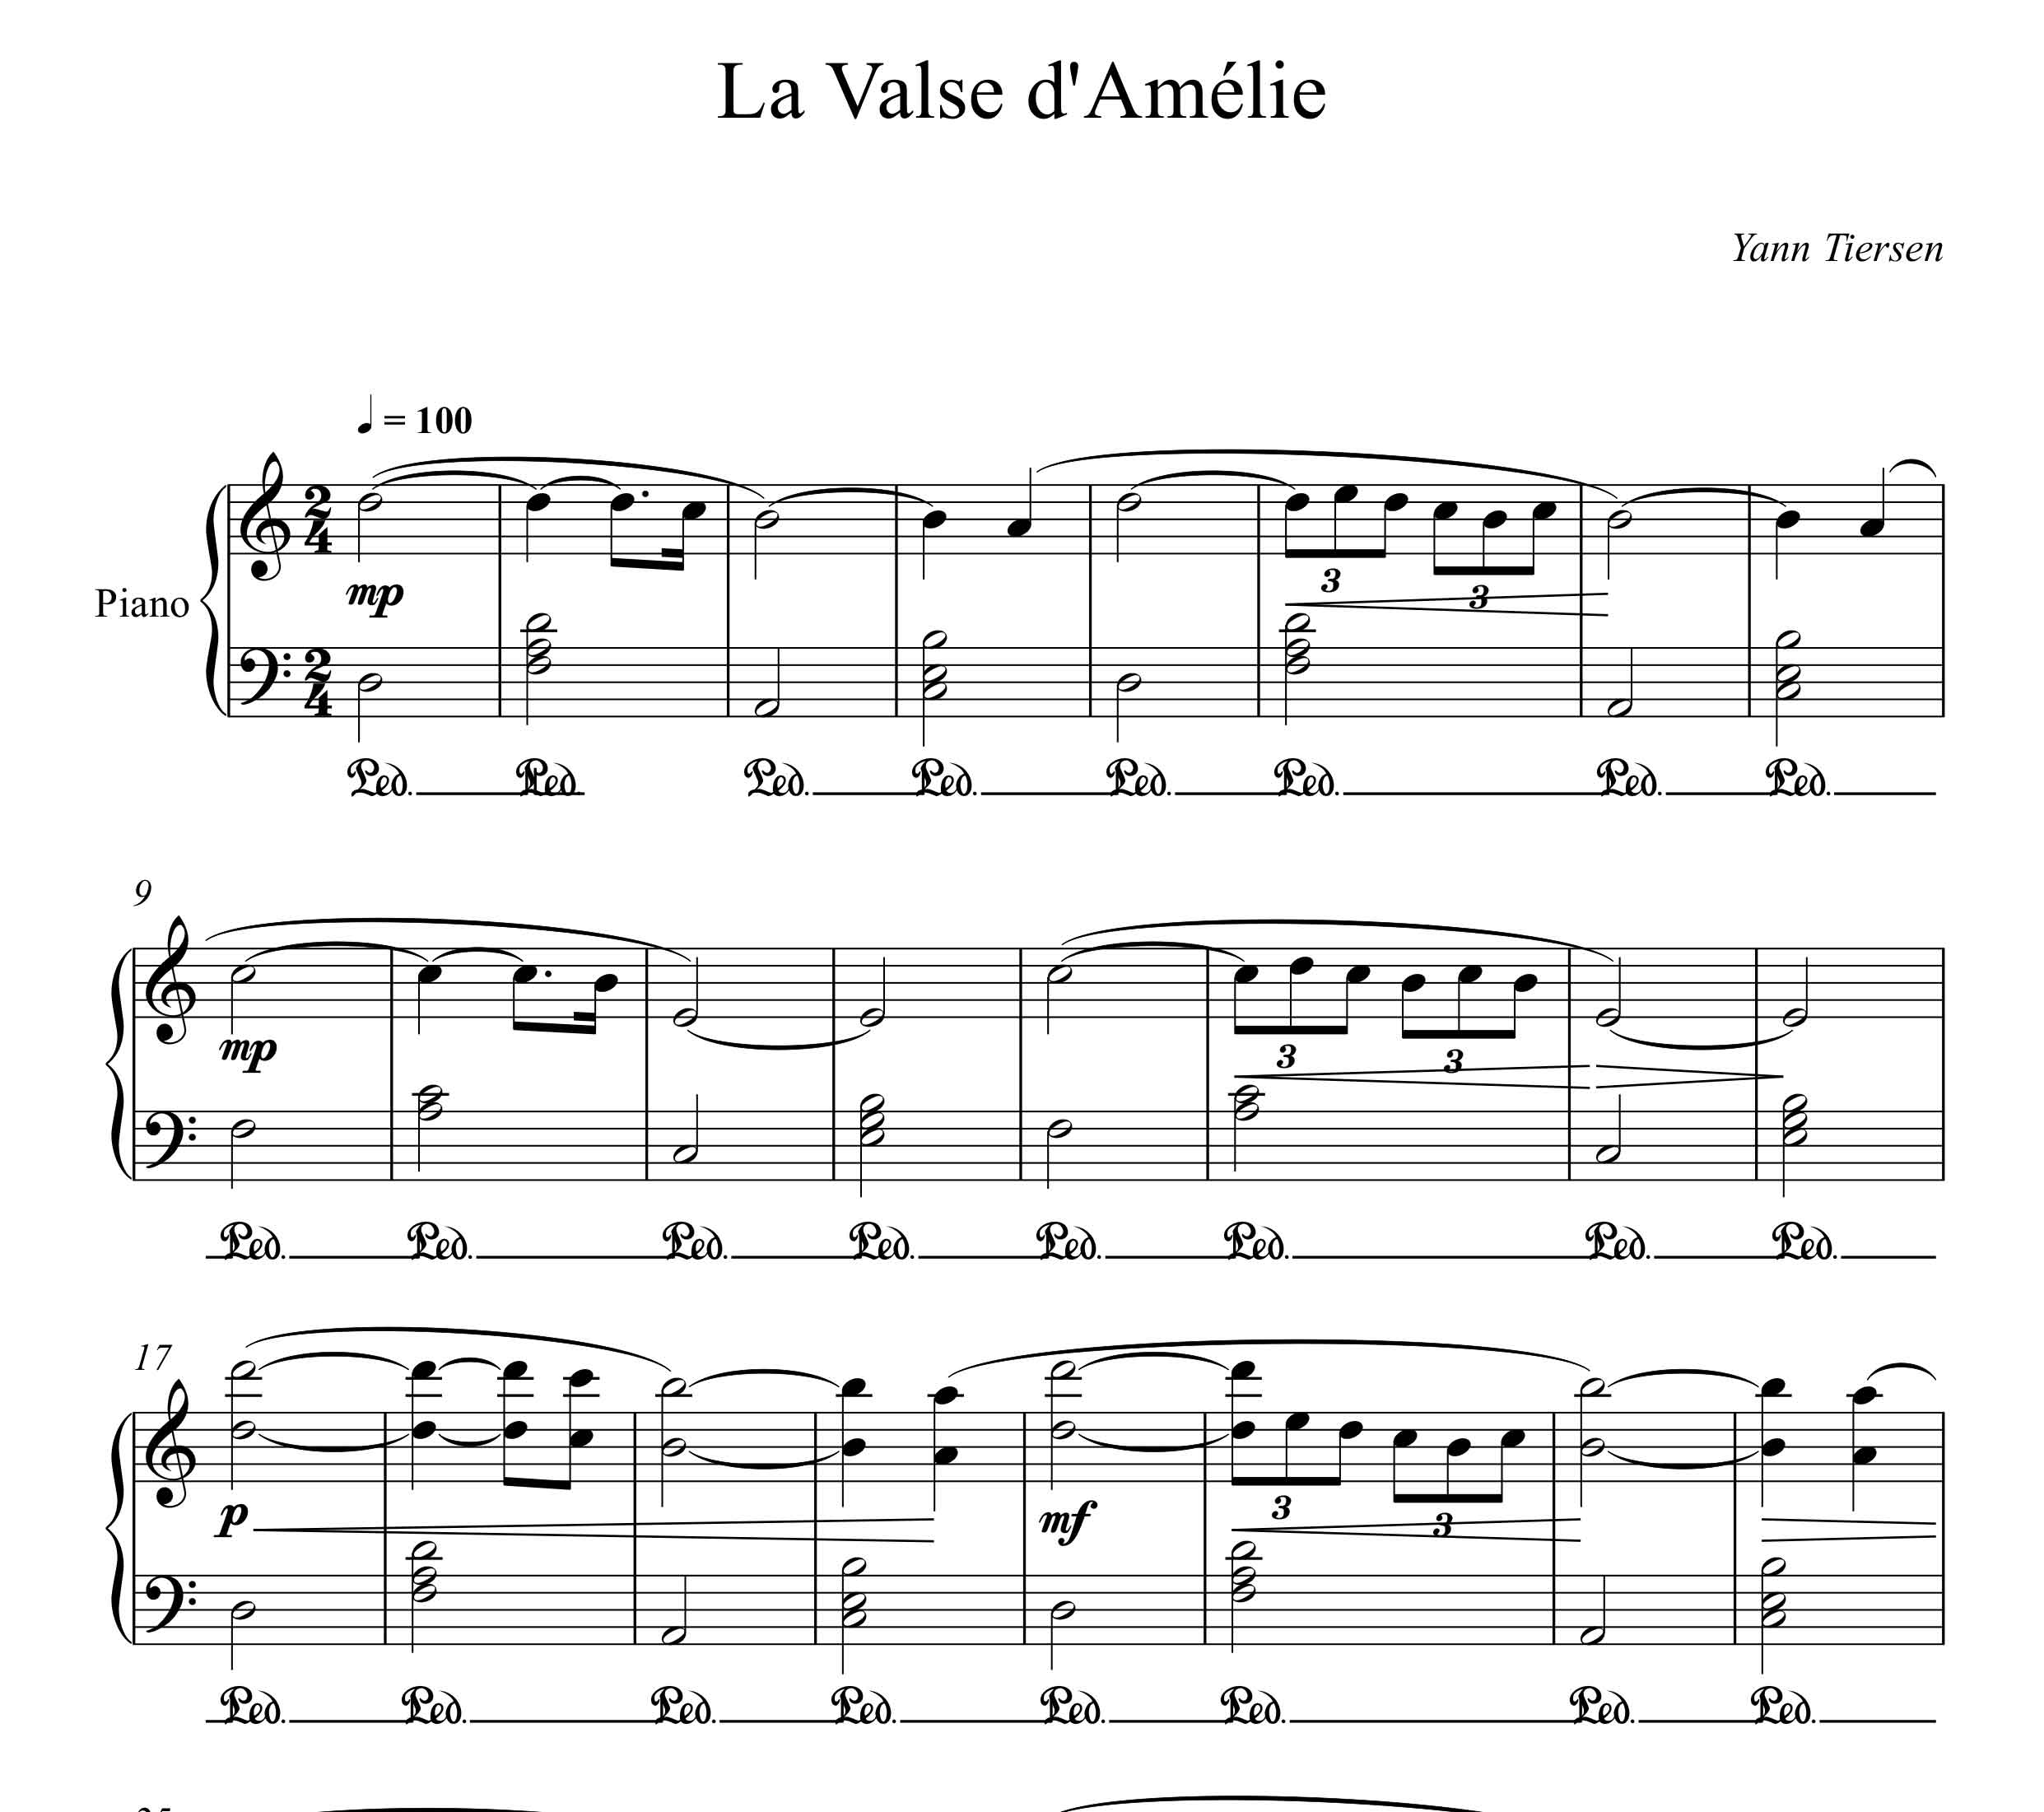 نت پیانو والتس امیلی  la valse d amelie از یان تیرسن